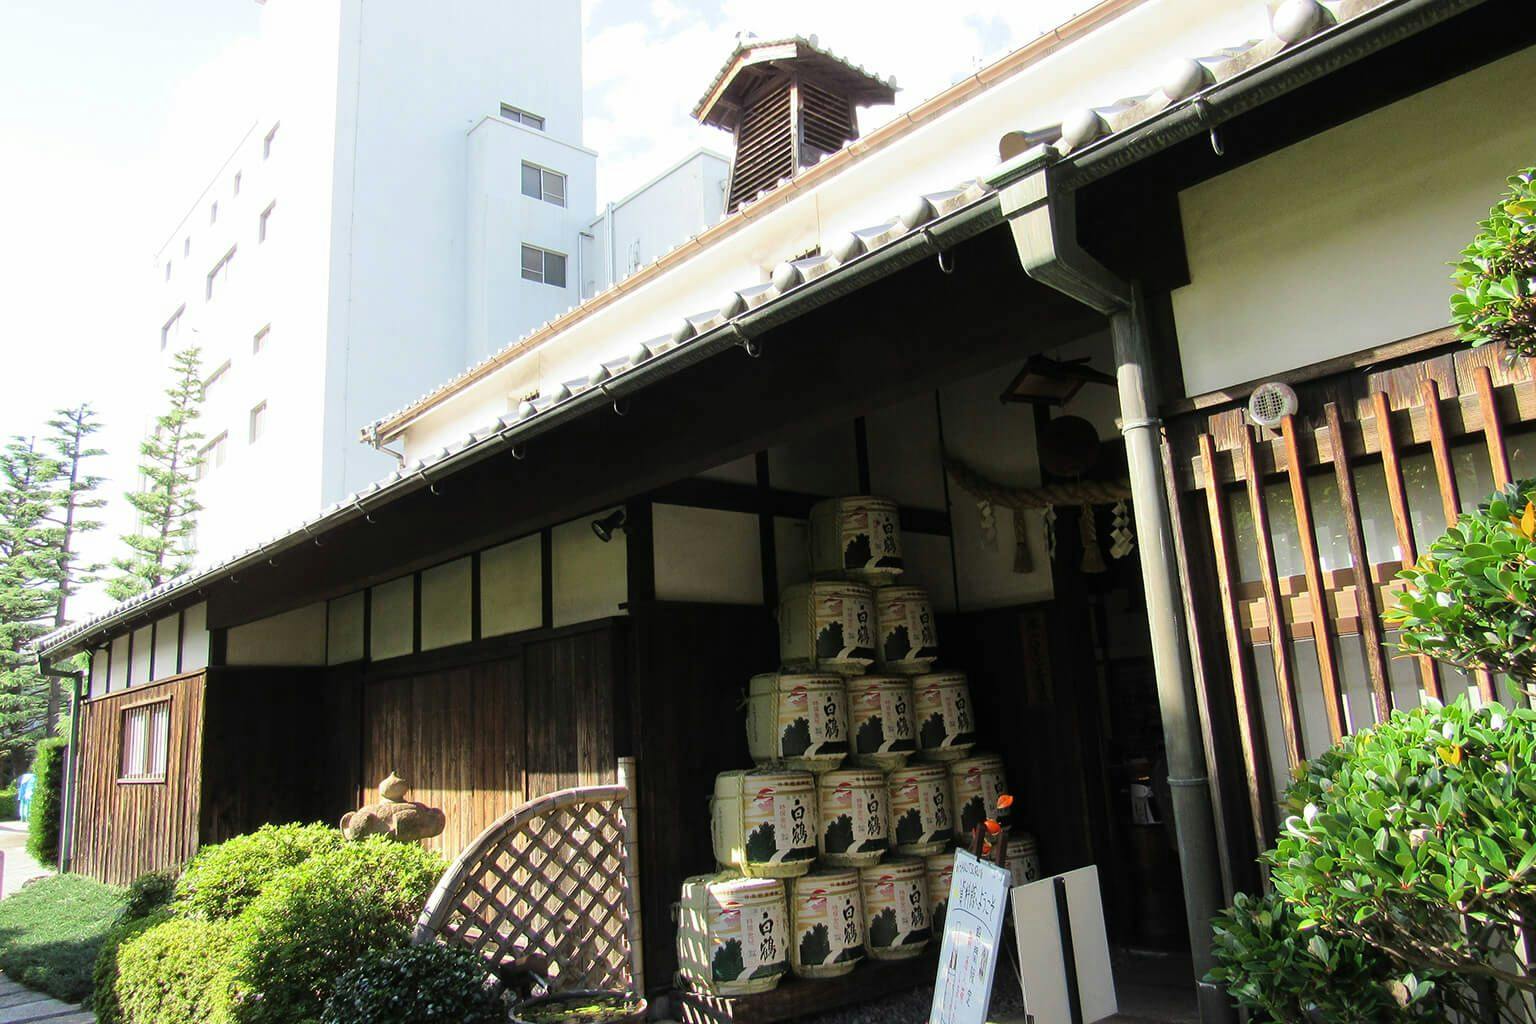 Hakutsuru Brewing Company in Hyogo prefecture.